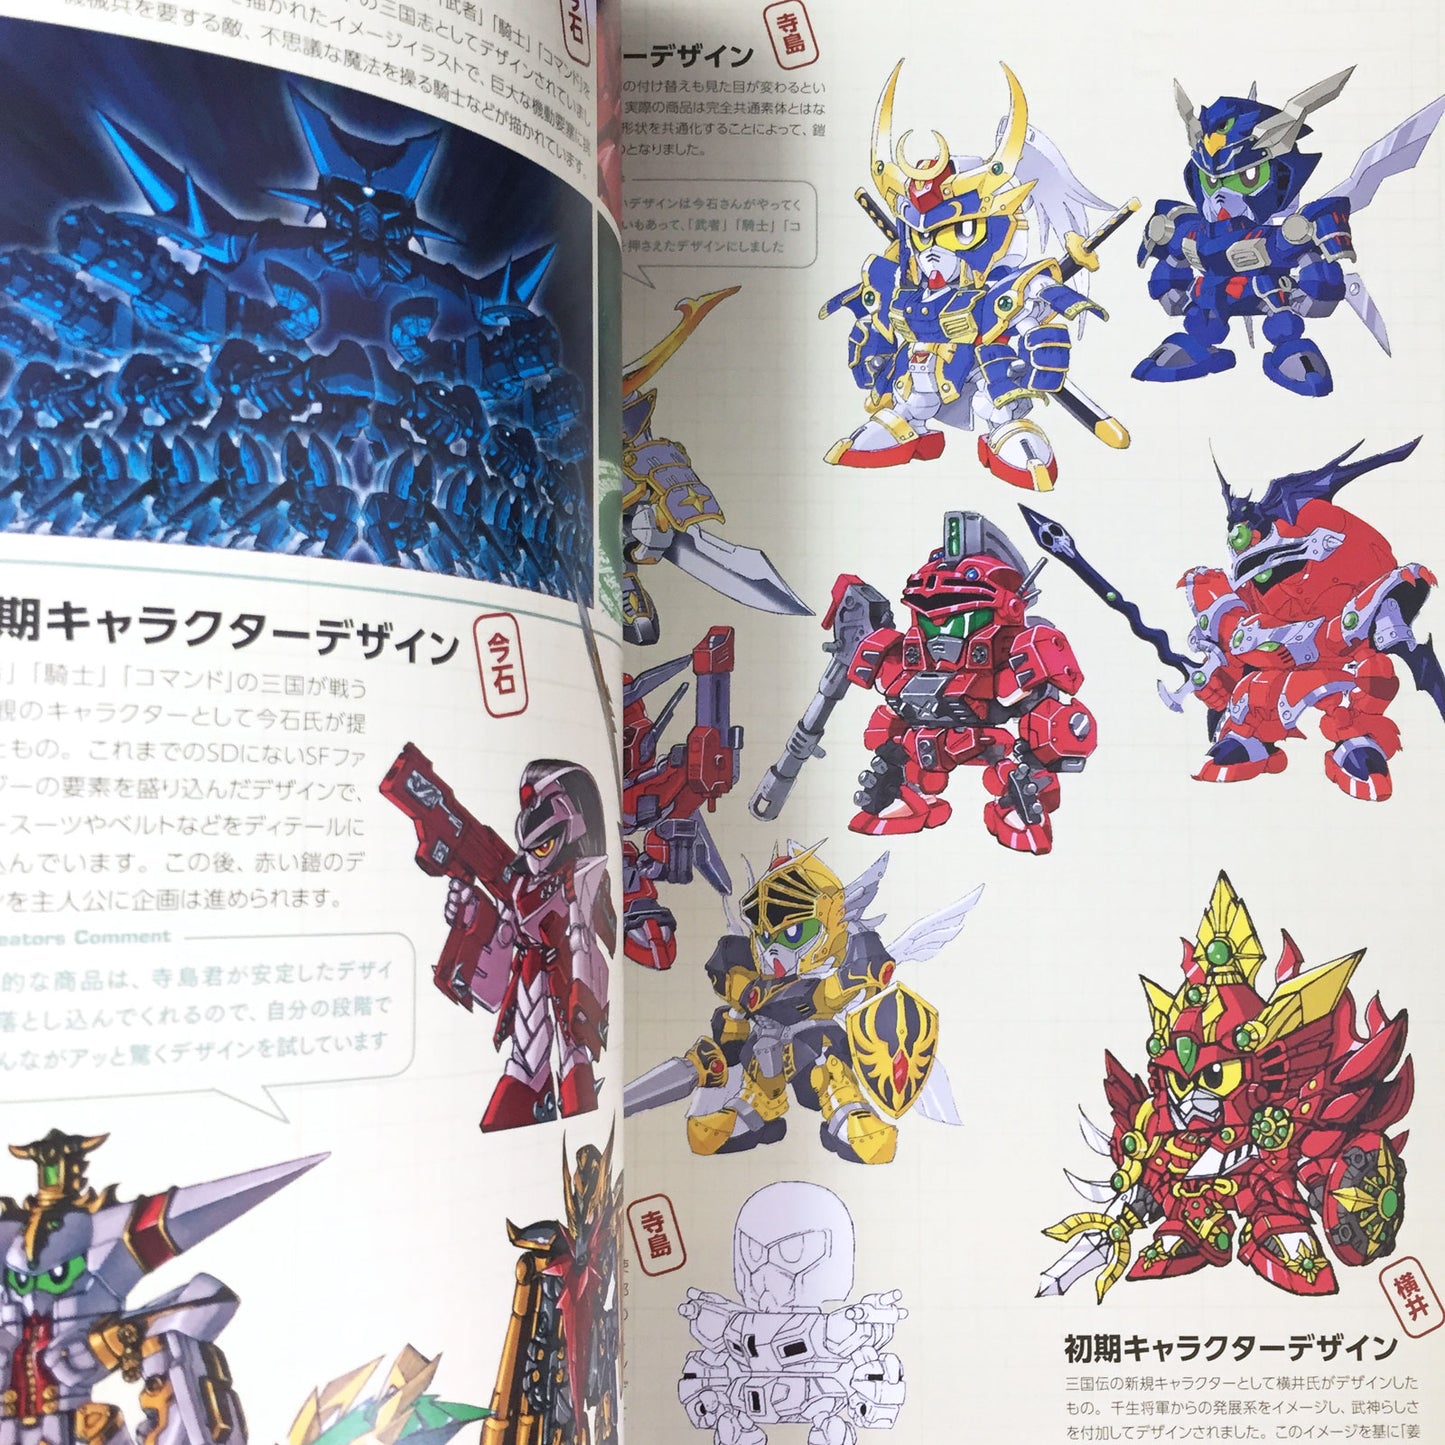 SD Gundam Design Works